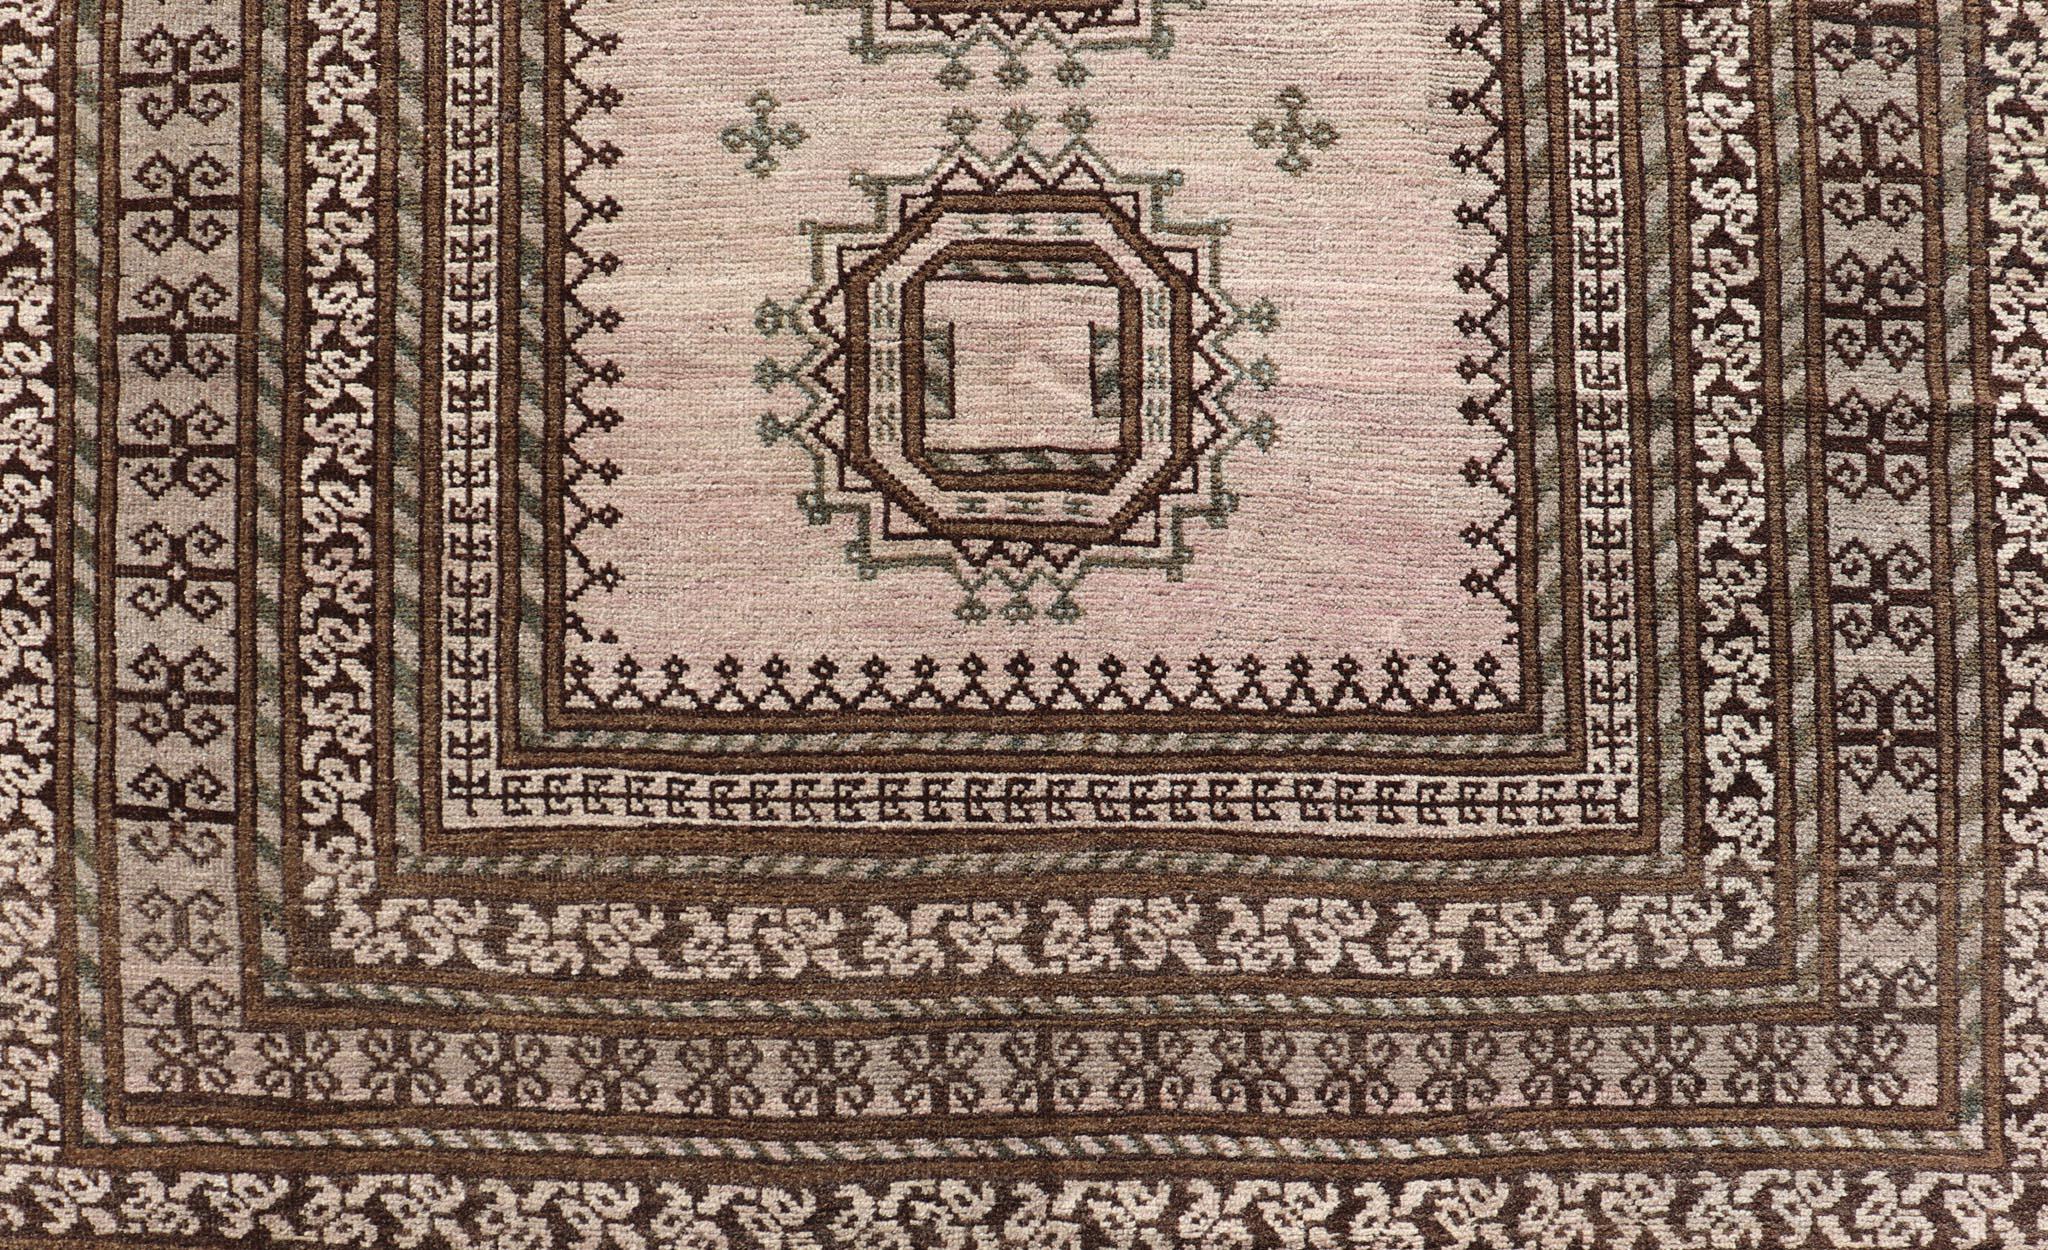 Mesures : 4'2 x 6'9 
Tapis tribal ancien de Baluch à motif de médaillon géométrique en forme de diamant sur toute la surface. Keivan Woven Arts, tapis EN-14681 ; pays d'origine / type : Iran / Baluch, circa 1930.

Ce tapis ancien de Baluch a été